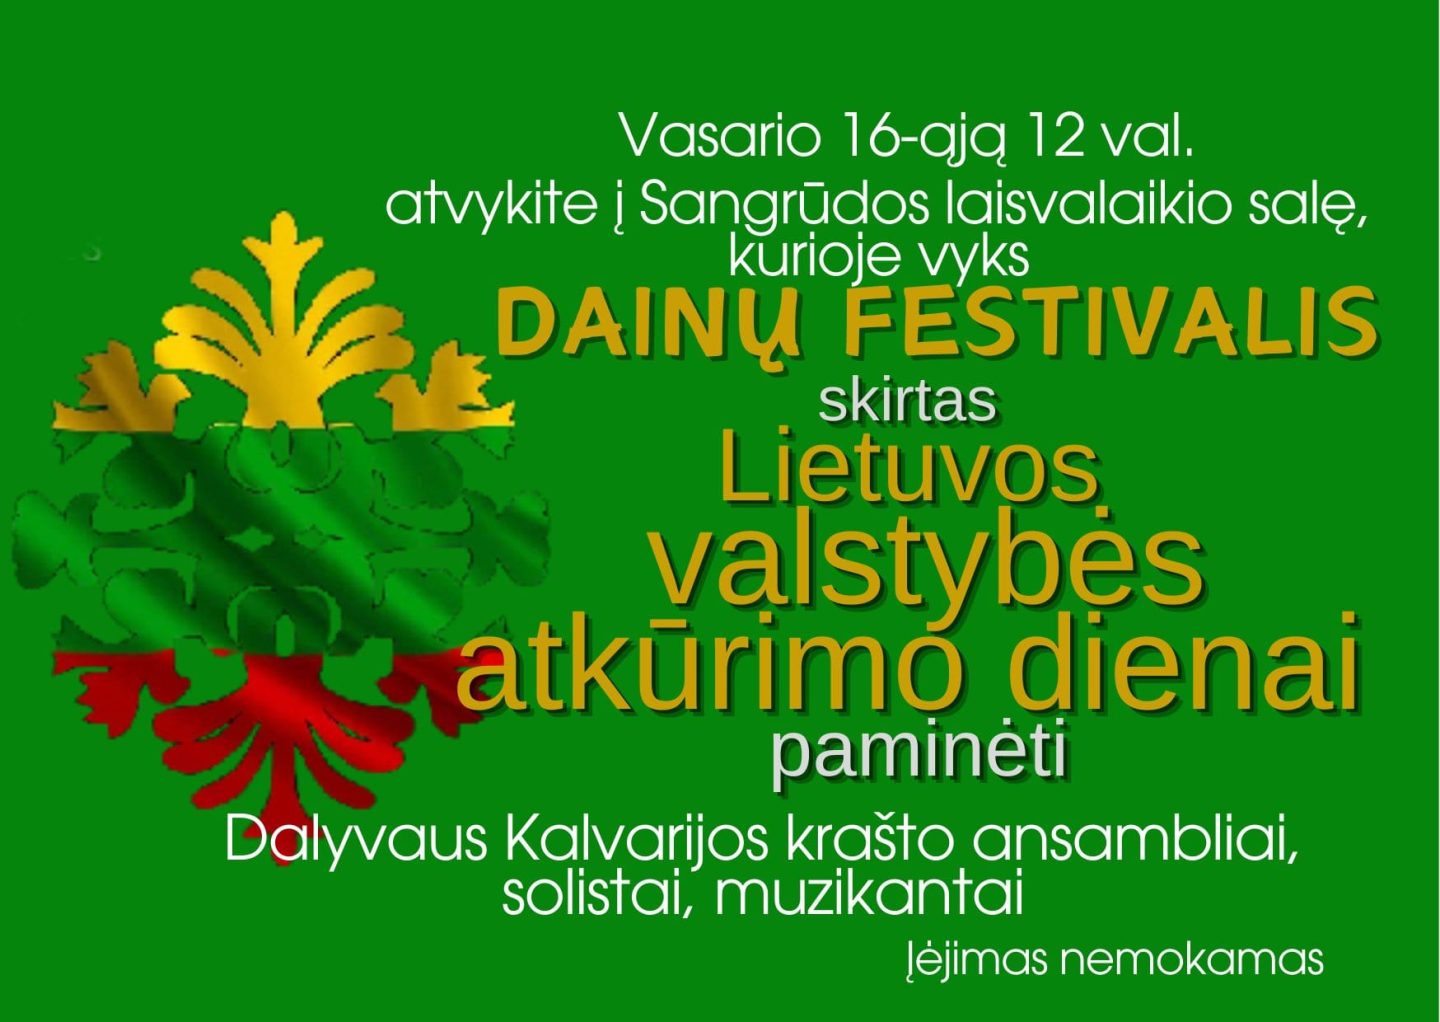 Dainų festivalis skirtas Lietuvos valstybės atkūrimo dienai paminėti